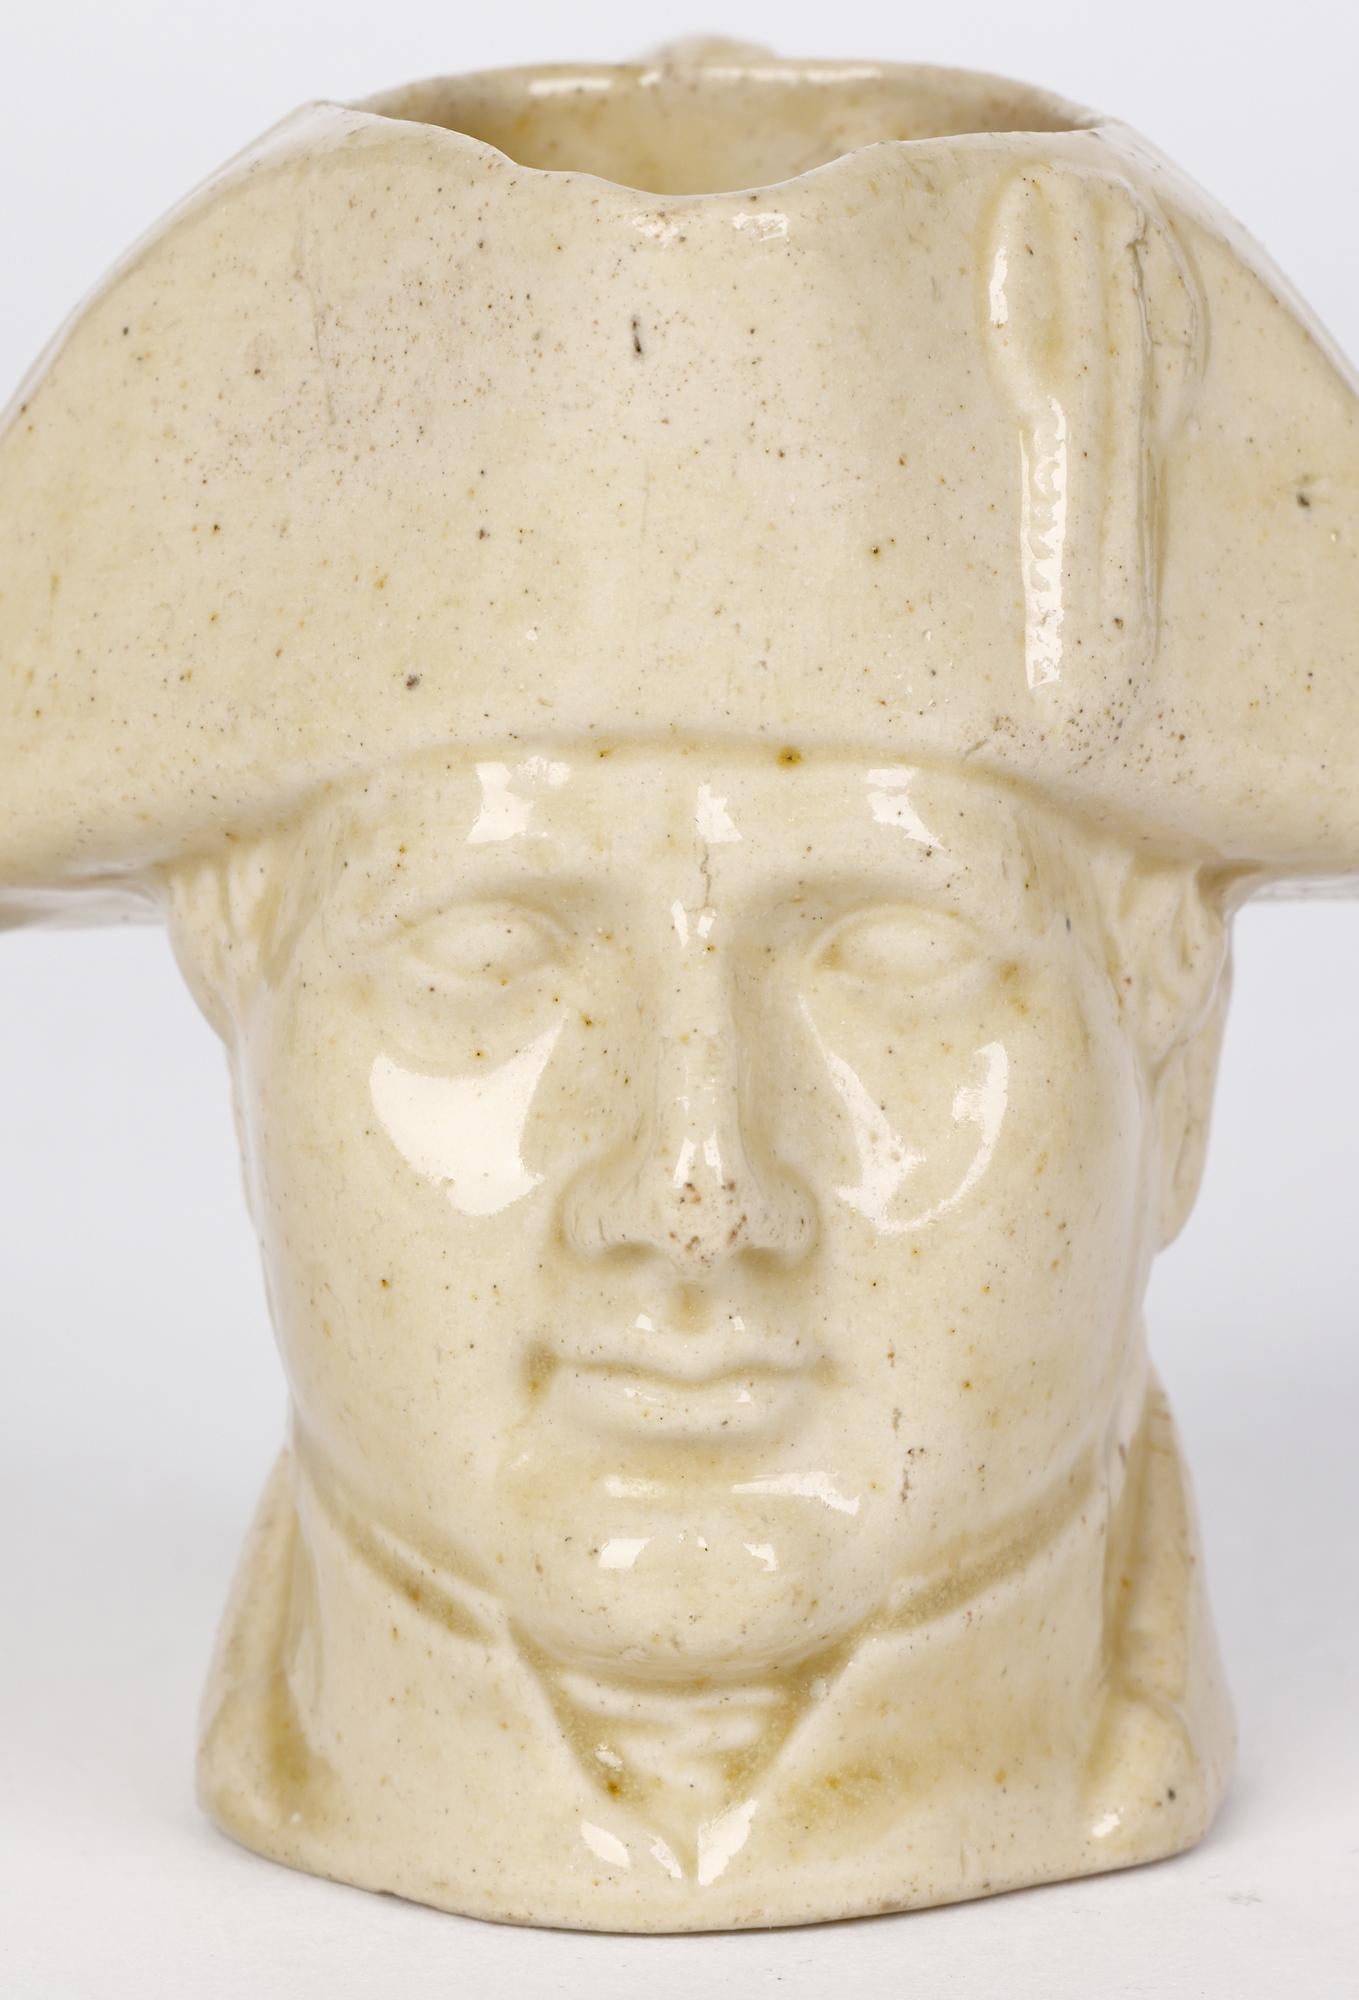 Un rare pichet à crème antique en grès émaillé au sel en forme de buste de Napoléon par Stephen Green, Lambeth, datant d'environ 1840. Ce ravissant pichet de petite taille est modelé de la tête de Napoléon, son col formant le bord inférieur et